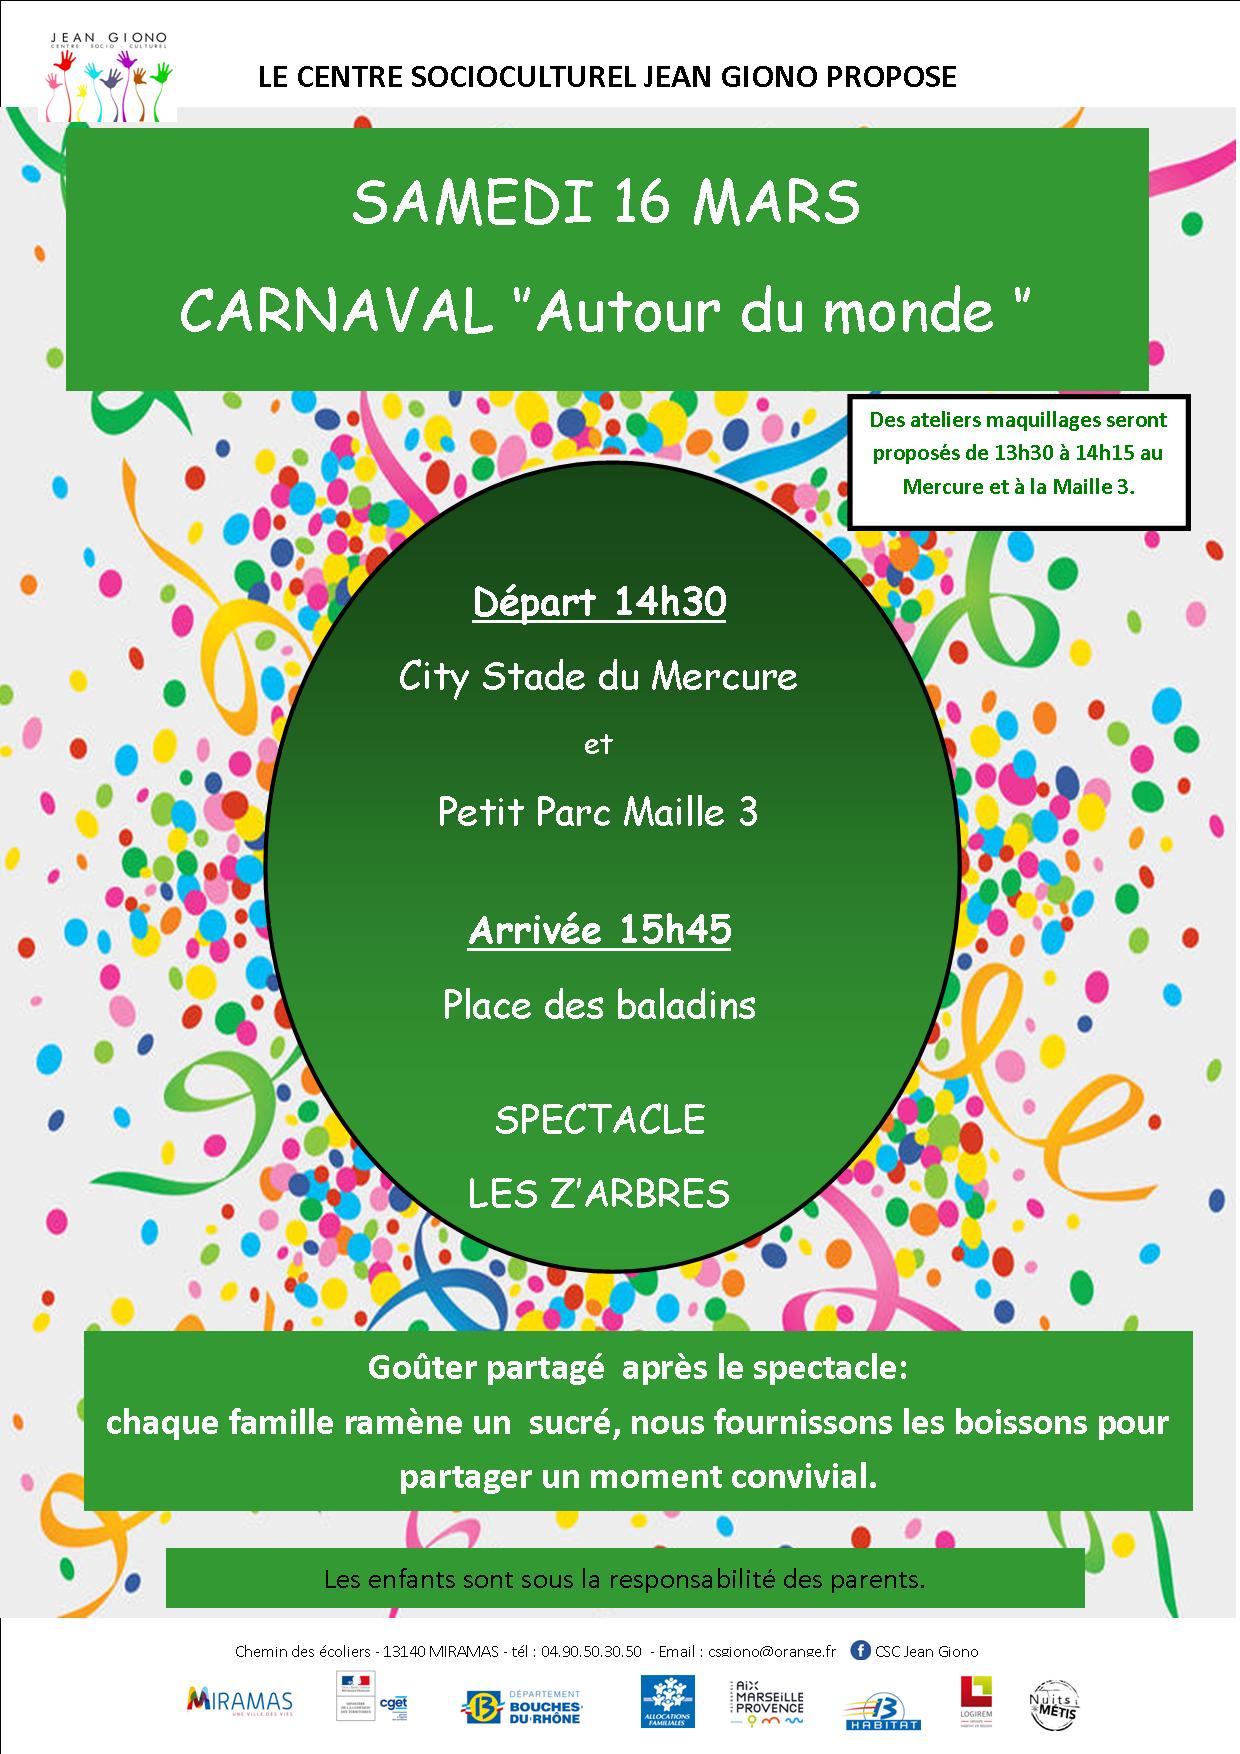 Le Carnaval autour du monde du Centre socioculturel  Jean Giono - Miramas le samedi 16 Mars